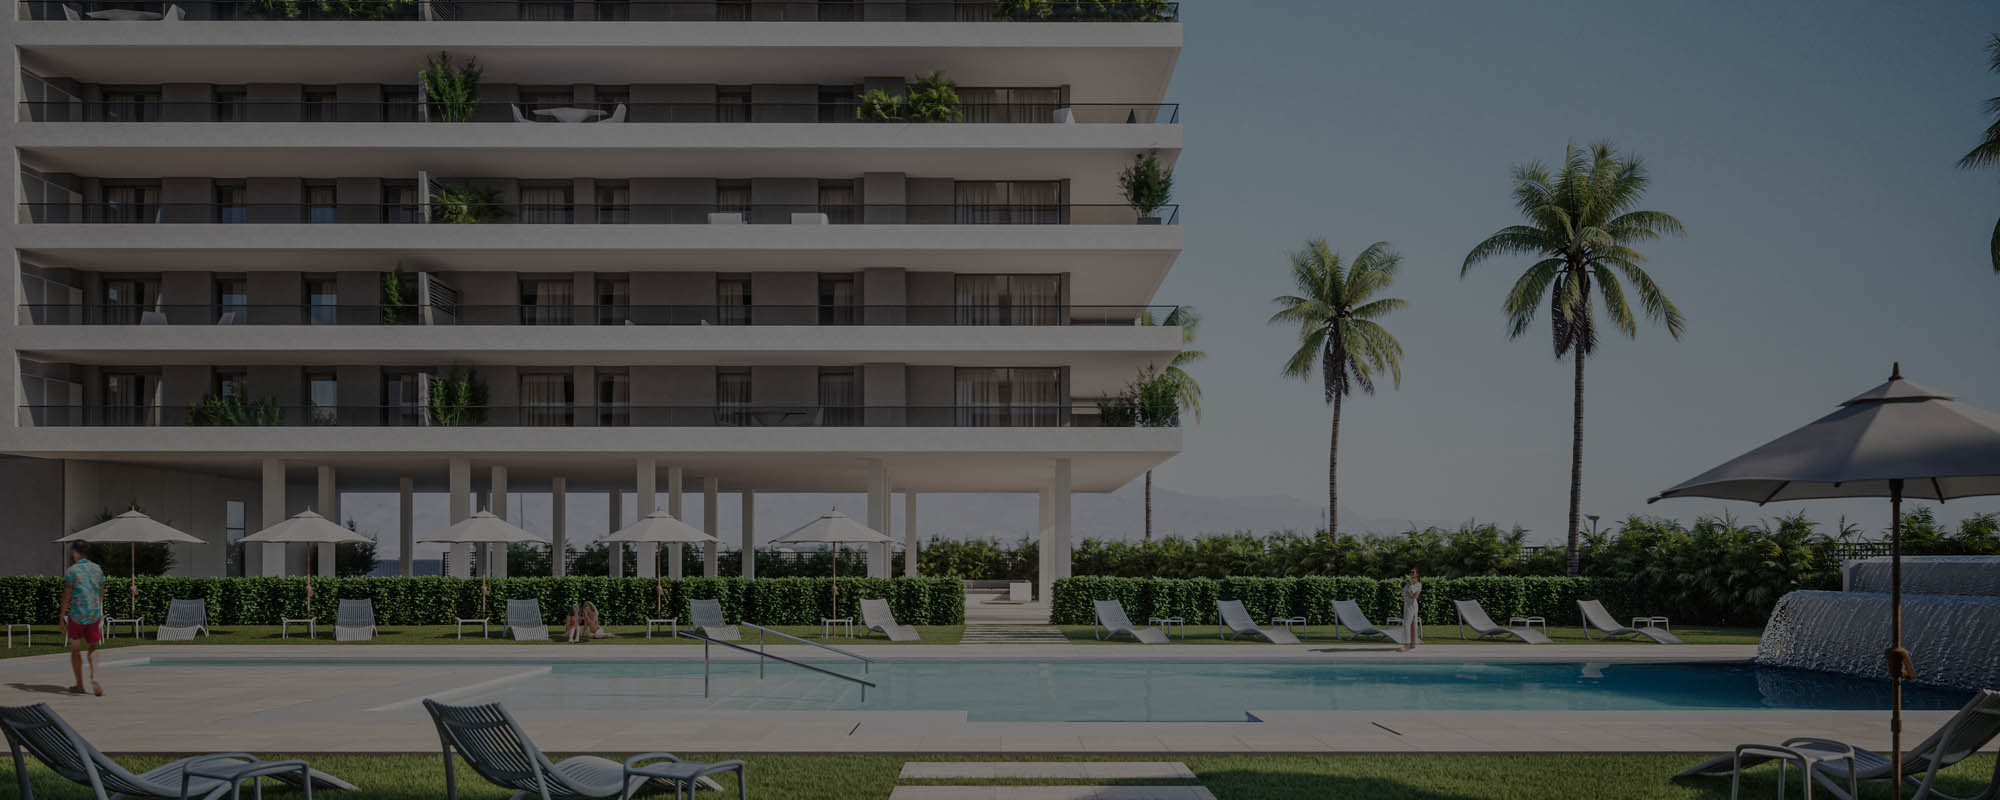 Renders 3D de una urbanización residencial en Almería